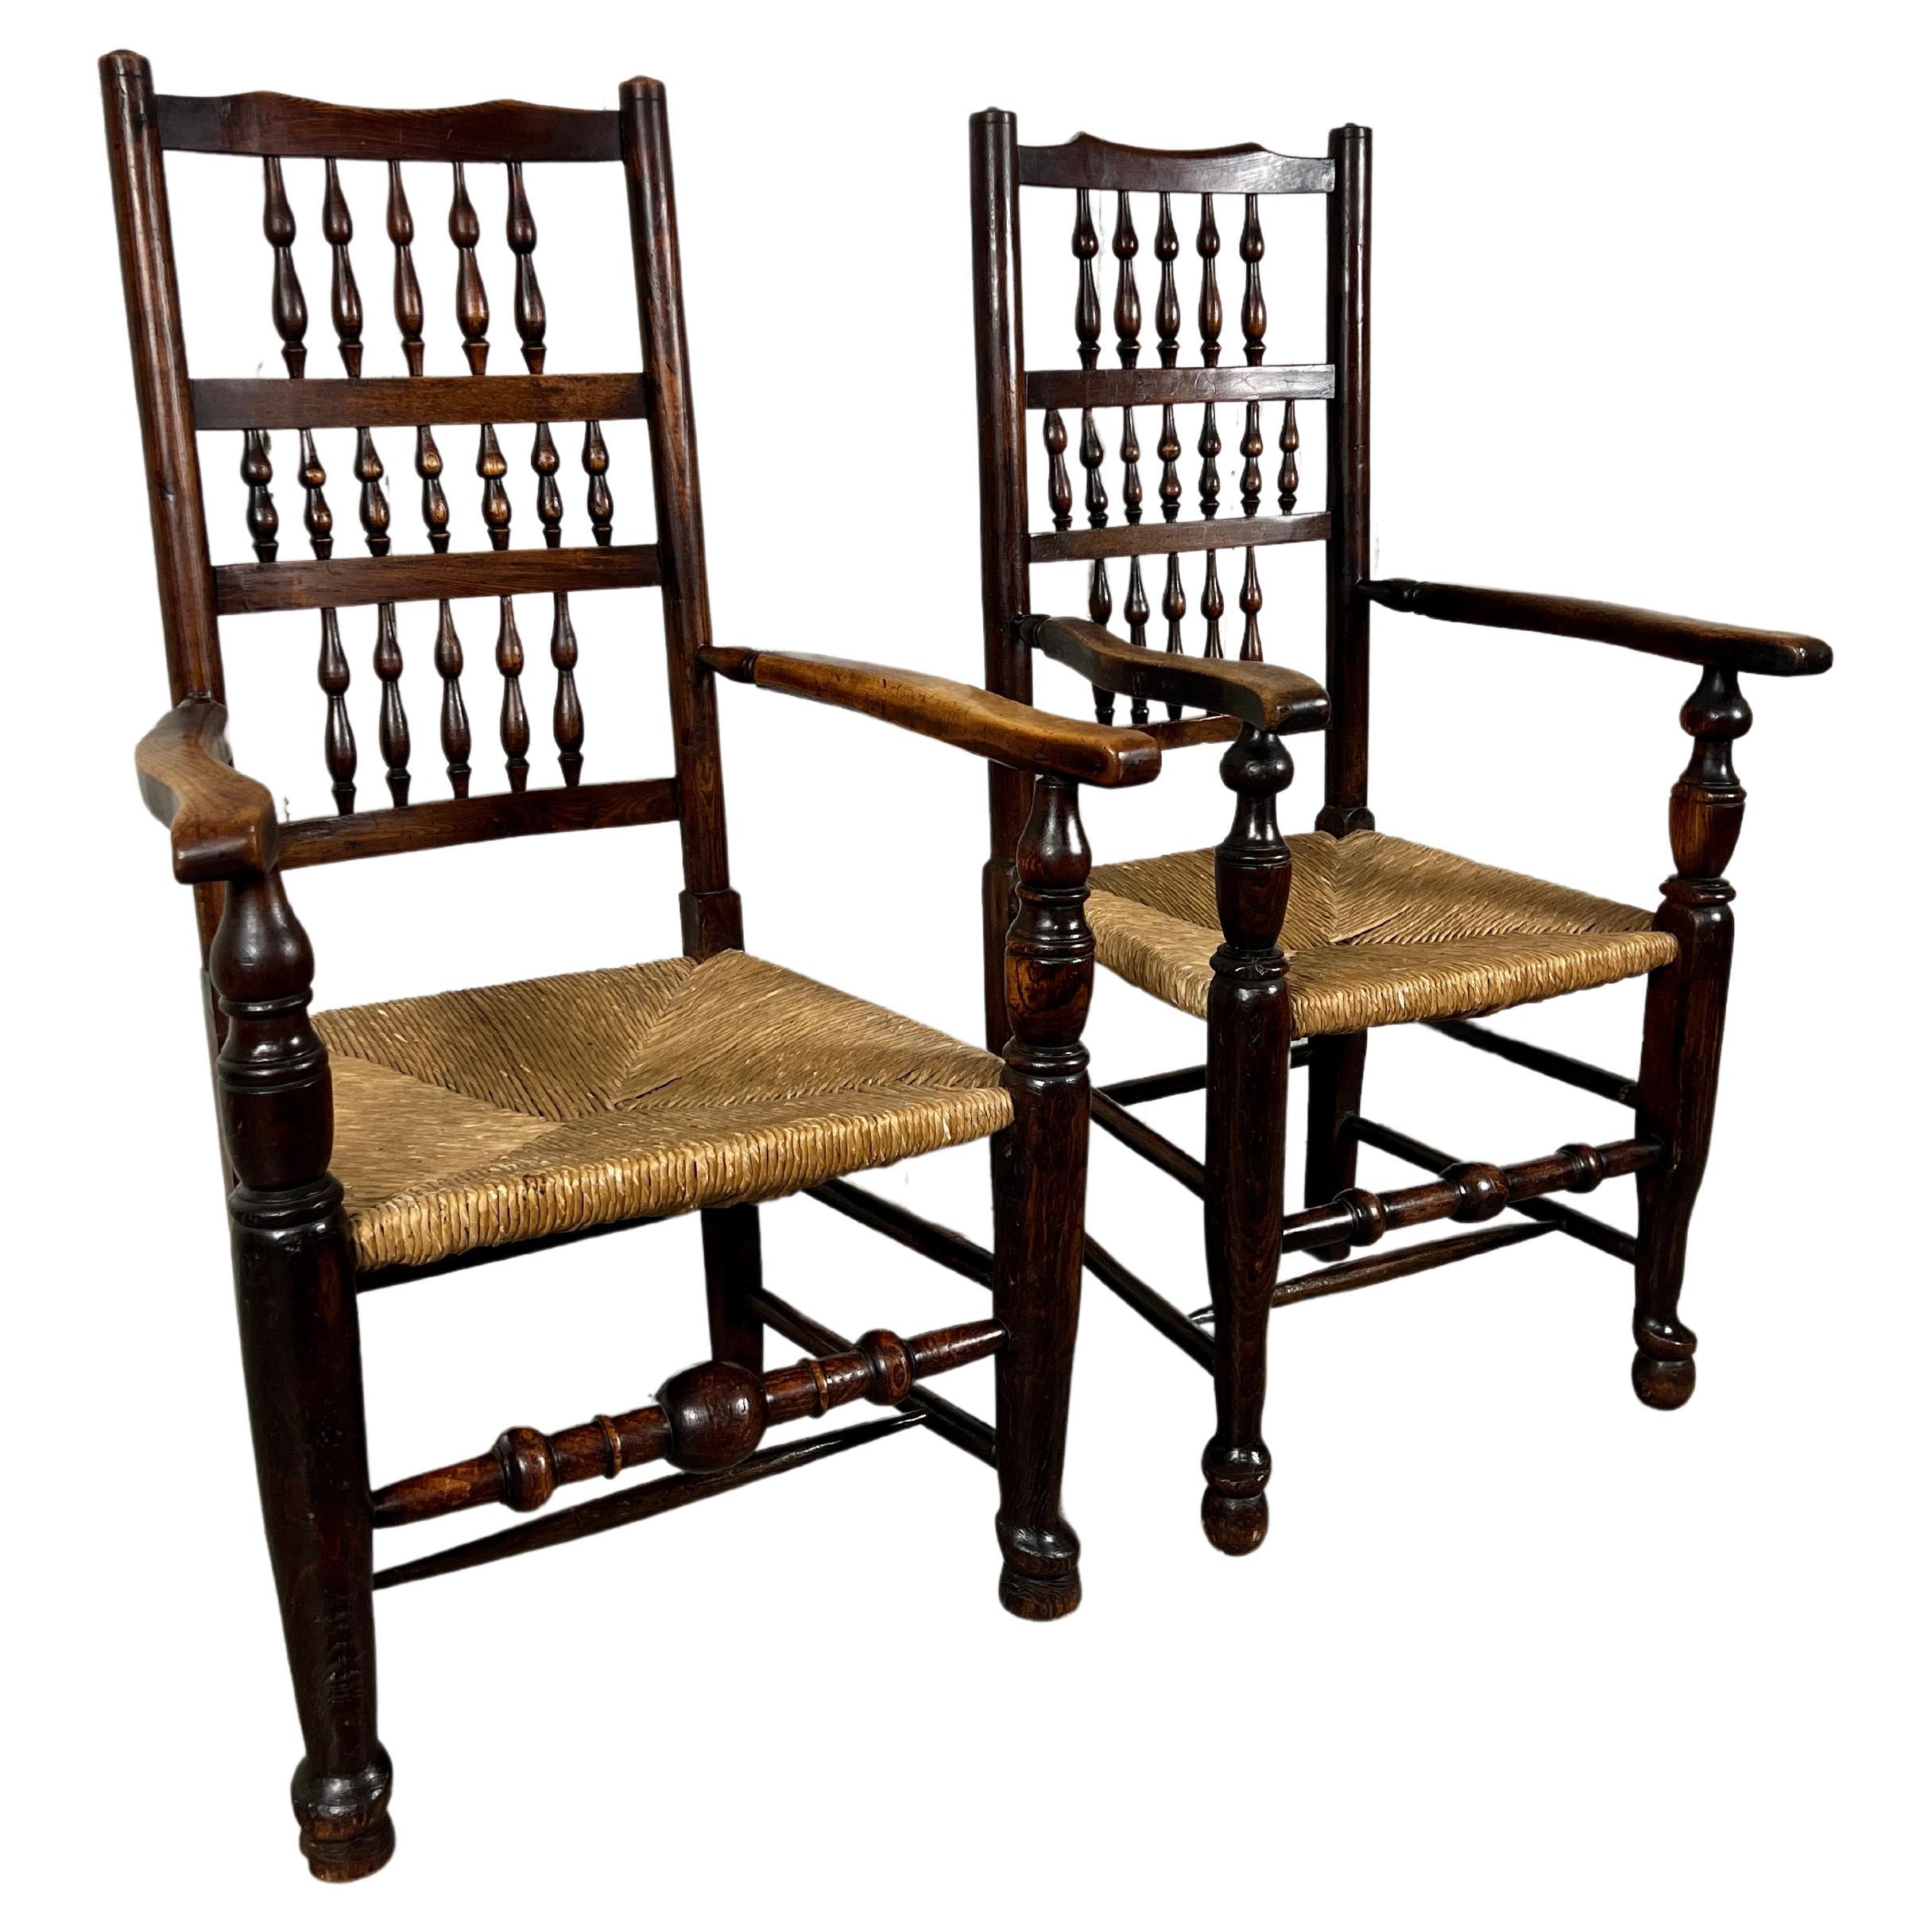 Harlekin-Sessel mit antiker Spindelrückenlehne – ein Paar 